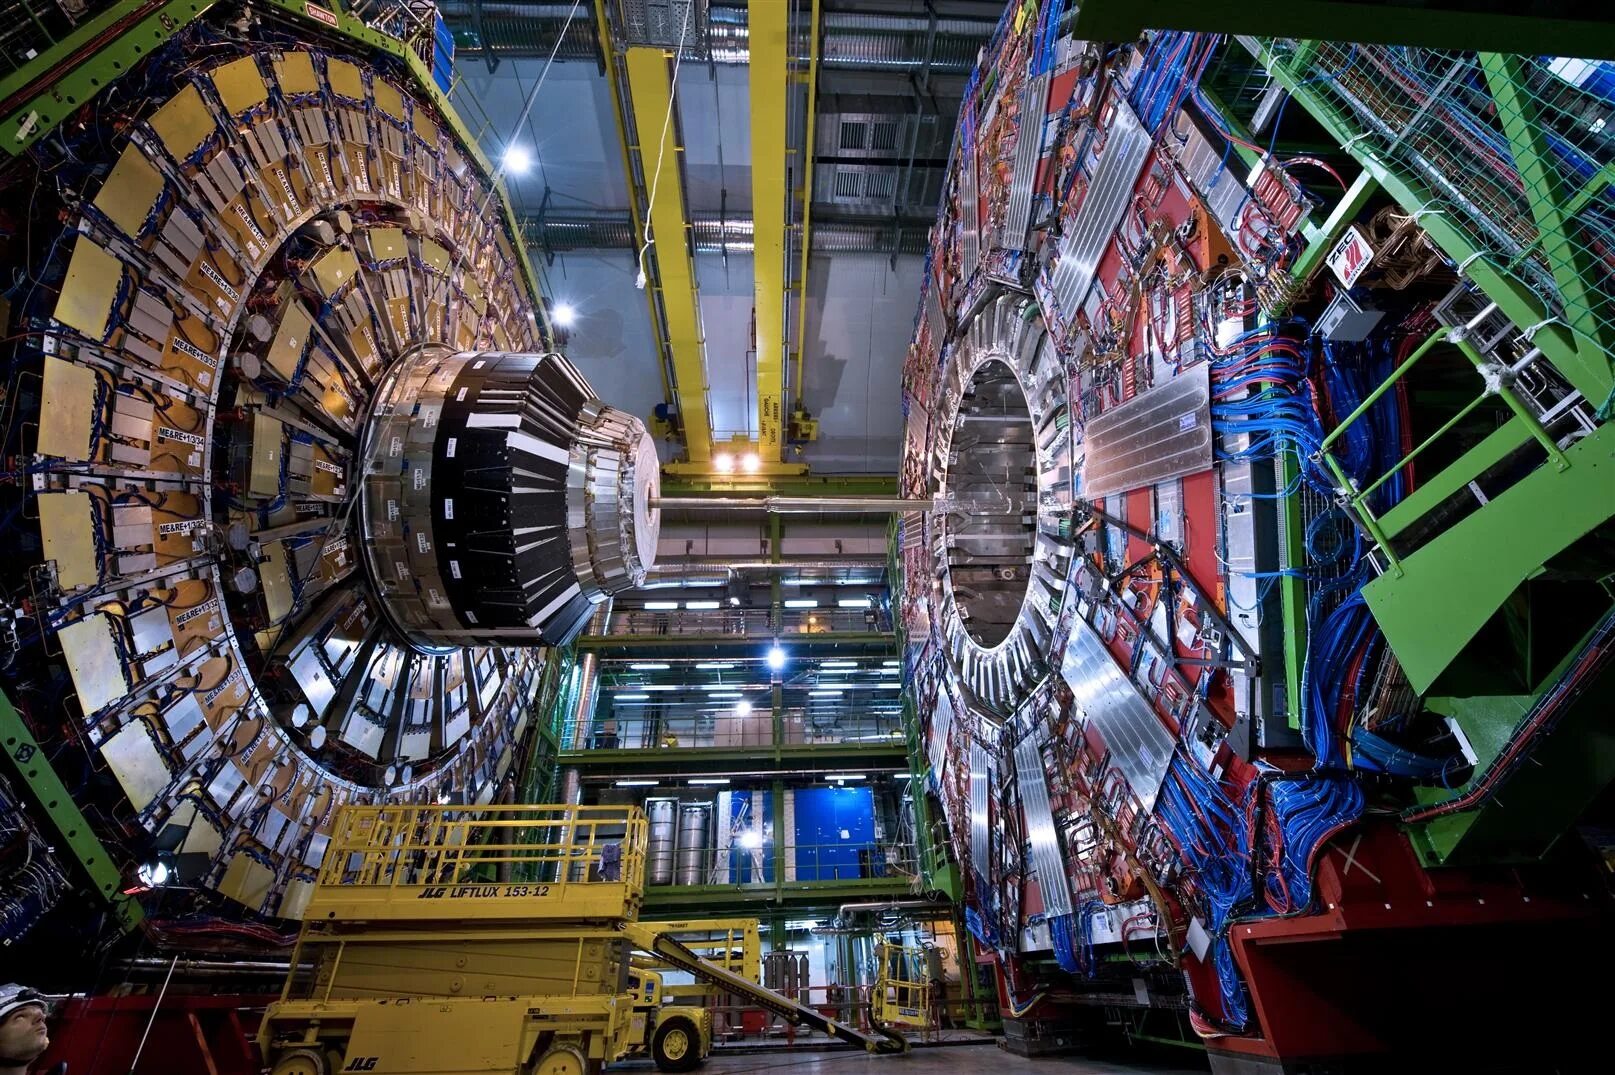 Большой адронный коллайдер ЦЕРН. Швейцария ЦЕРН коллайдер. Большой адронный коллайдер в Швейцарии. LHCB большой адронный коллайдер. Андроидный коллайдер это